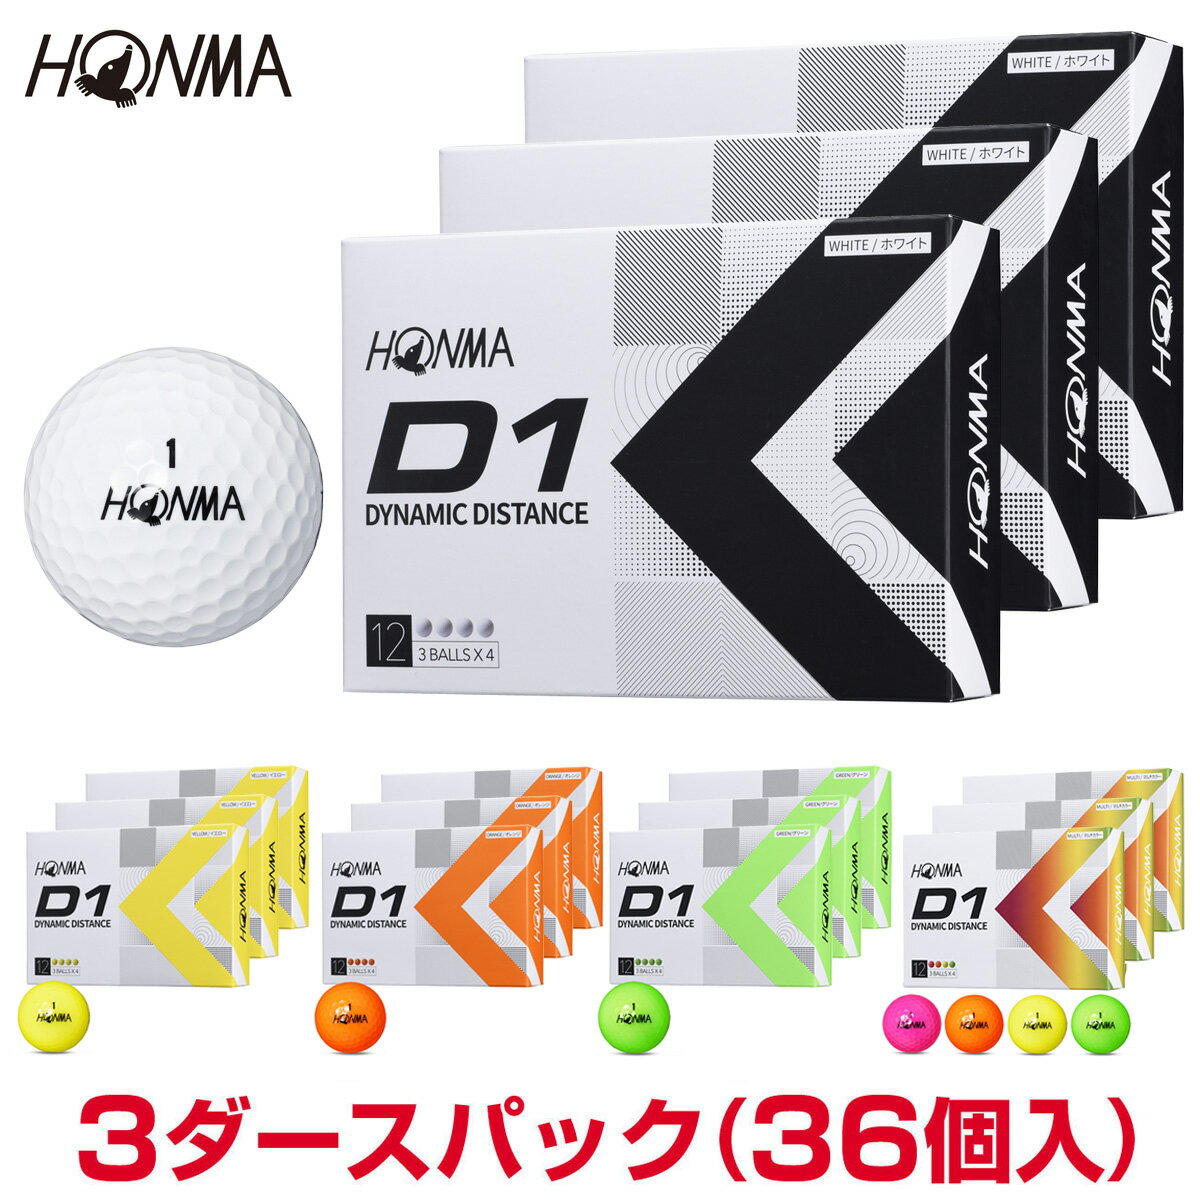 【まとめ買い】HONMA GOLF(本間ゴルフ)日本正規品 ホンマ D1 ゴルフボール3ダースパック(36個入) 2022モデル 「BT2201」 【あす楽対応】